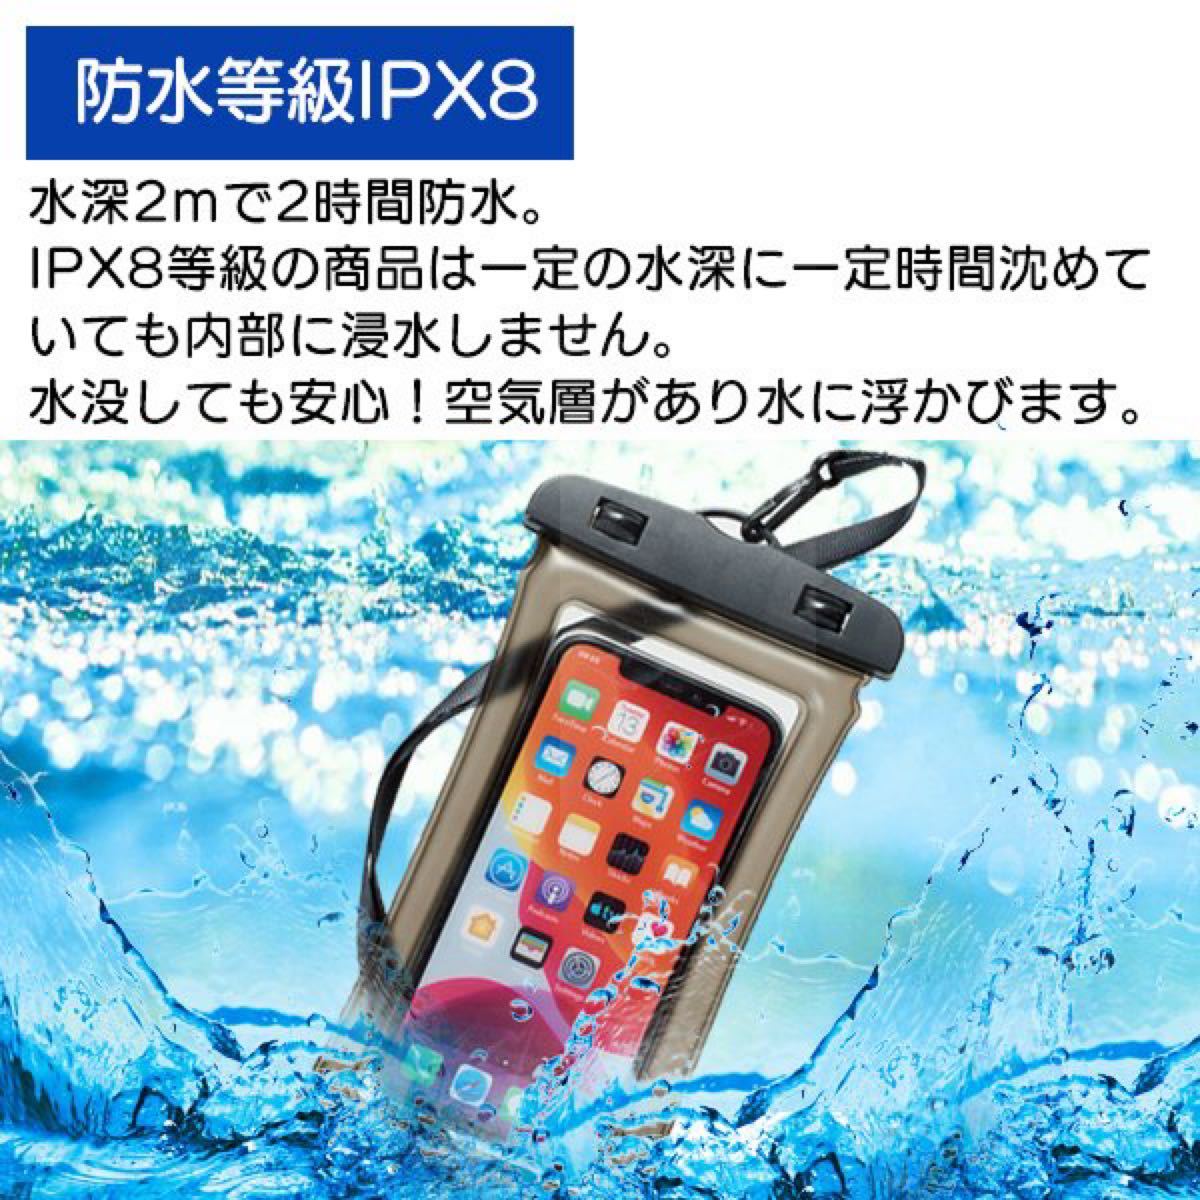 防水 マルチケース iPhone Android スマホ全機種対応